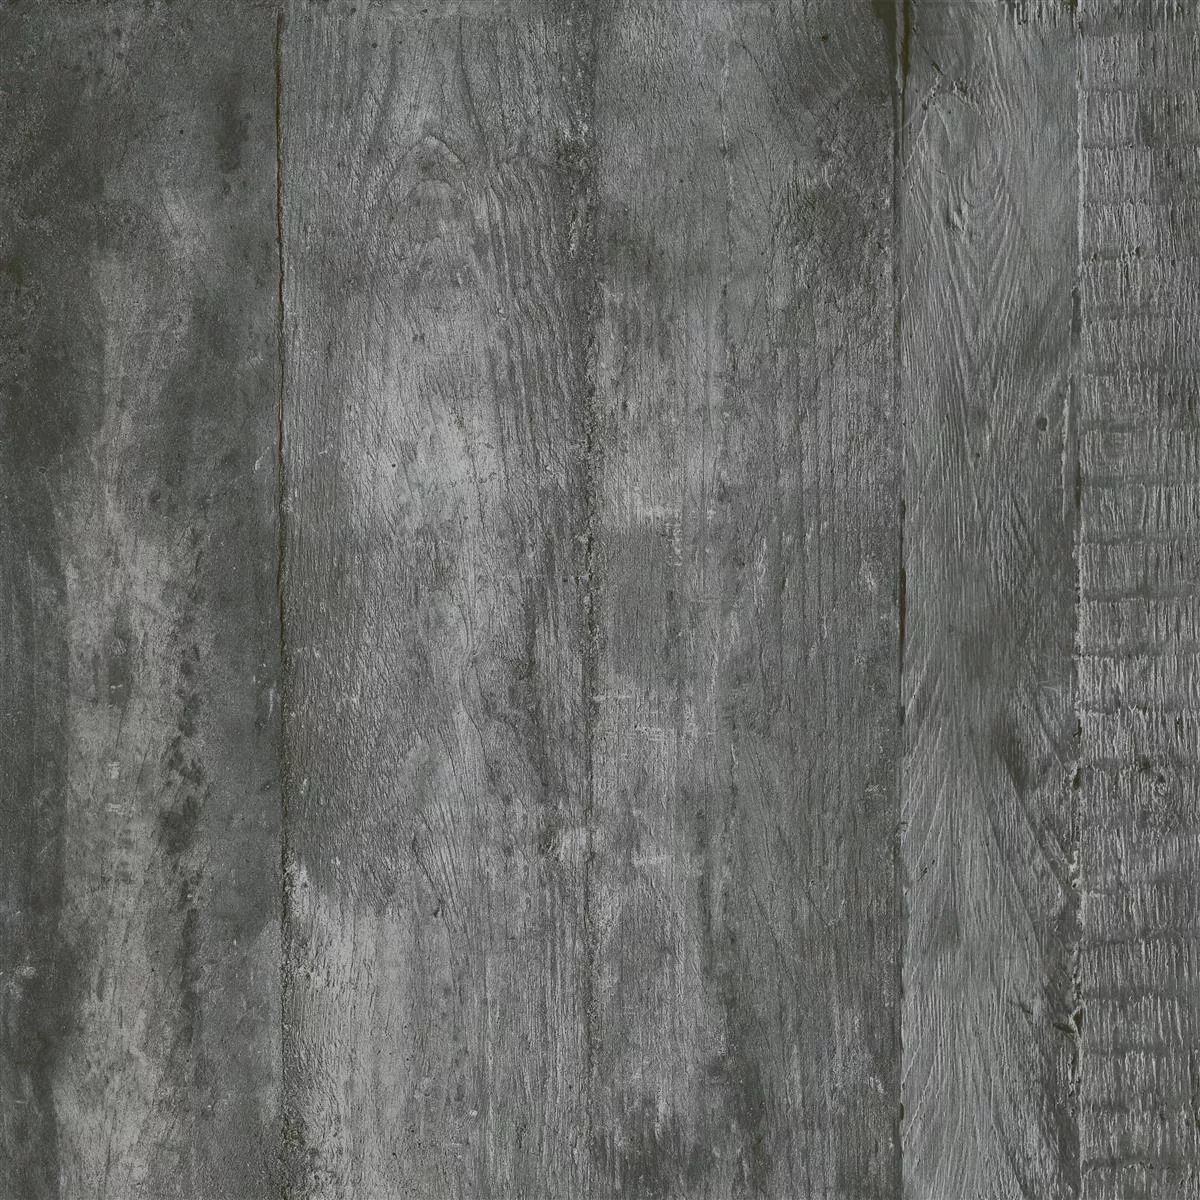 Πρότυπο Πλακάκια Δαπέδου Gorki Όψη Ξύλου 60x60cm Γυαλισμένο Graphit